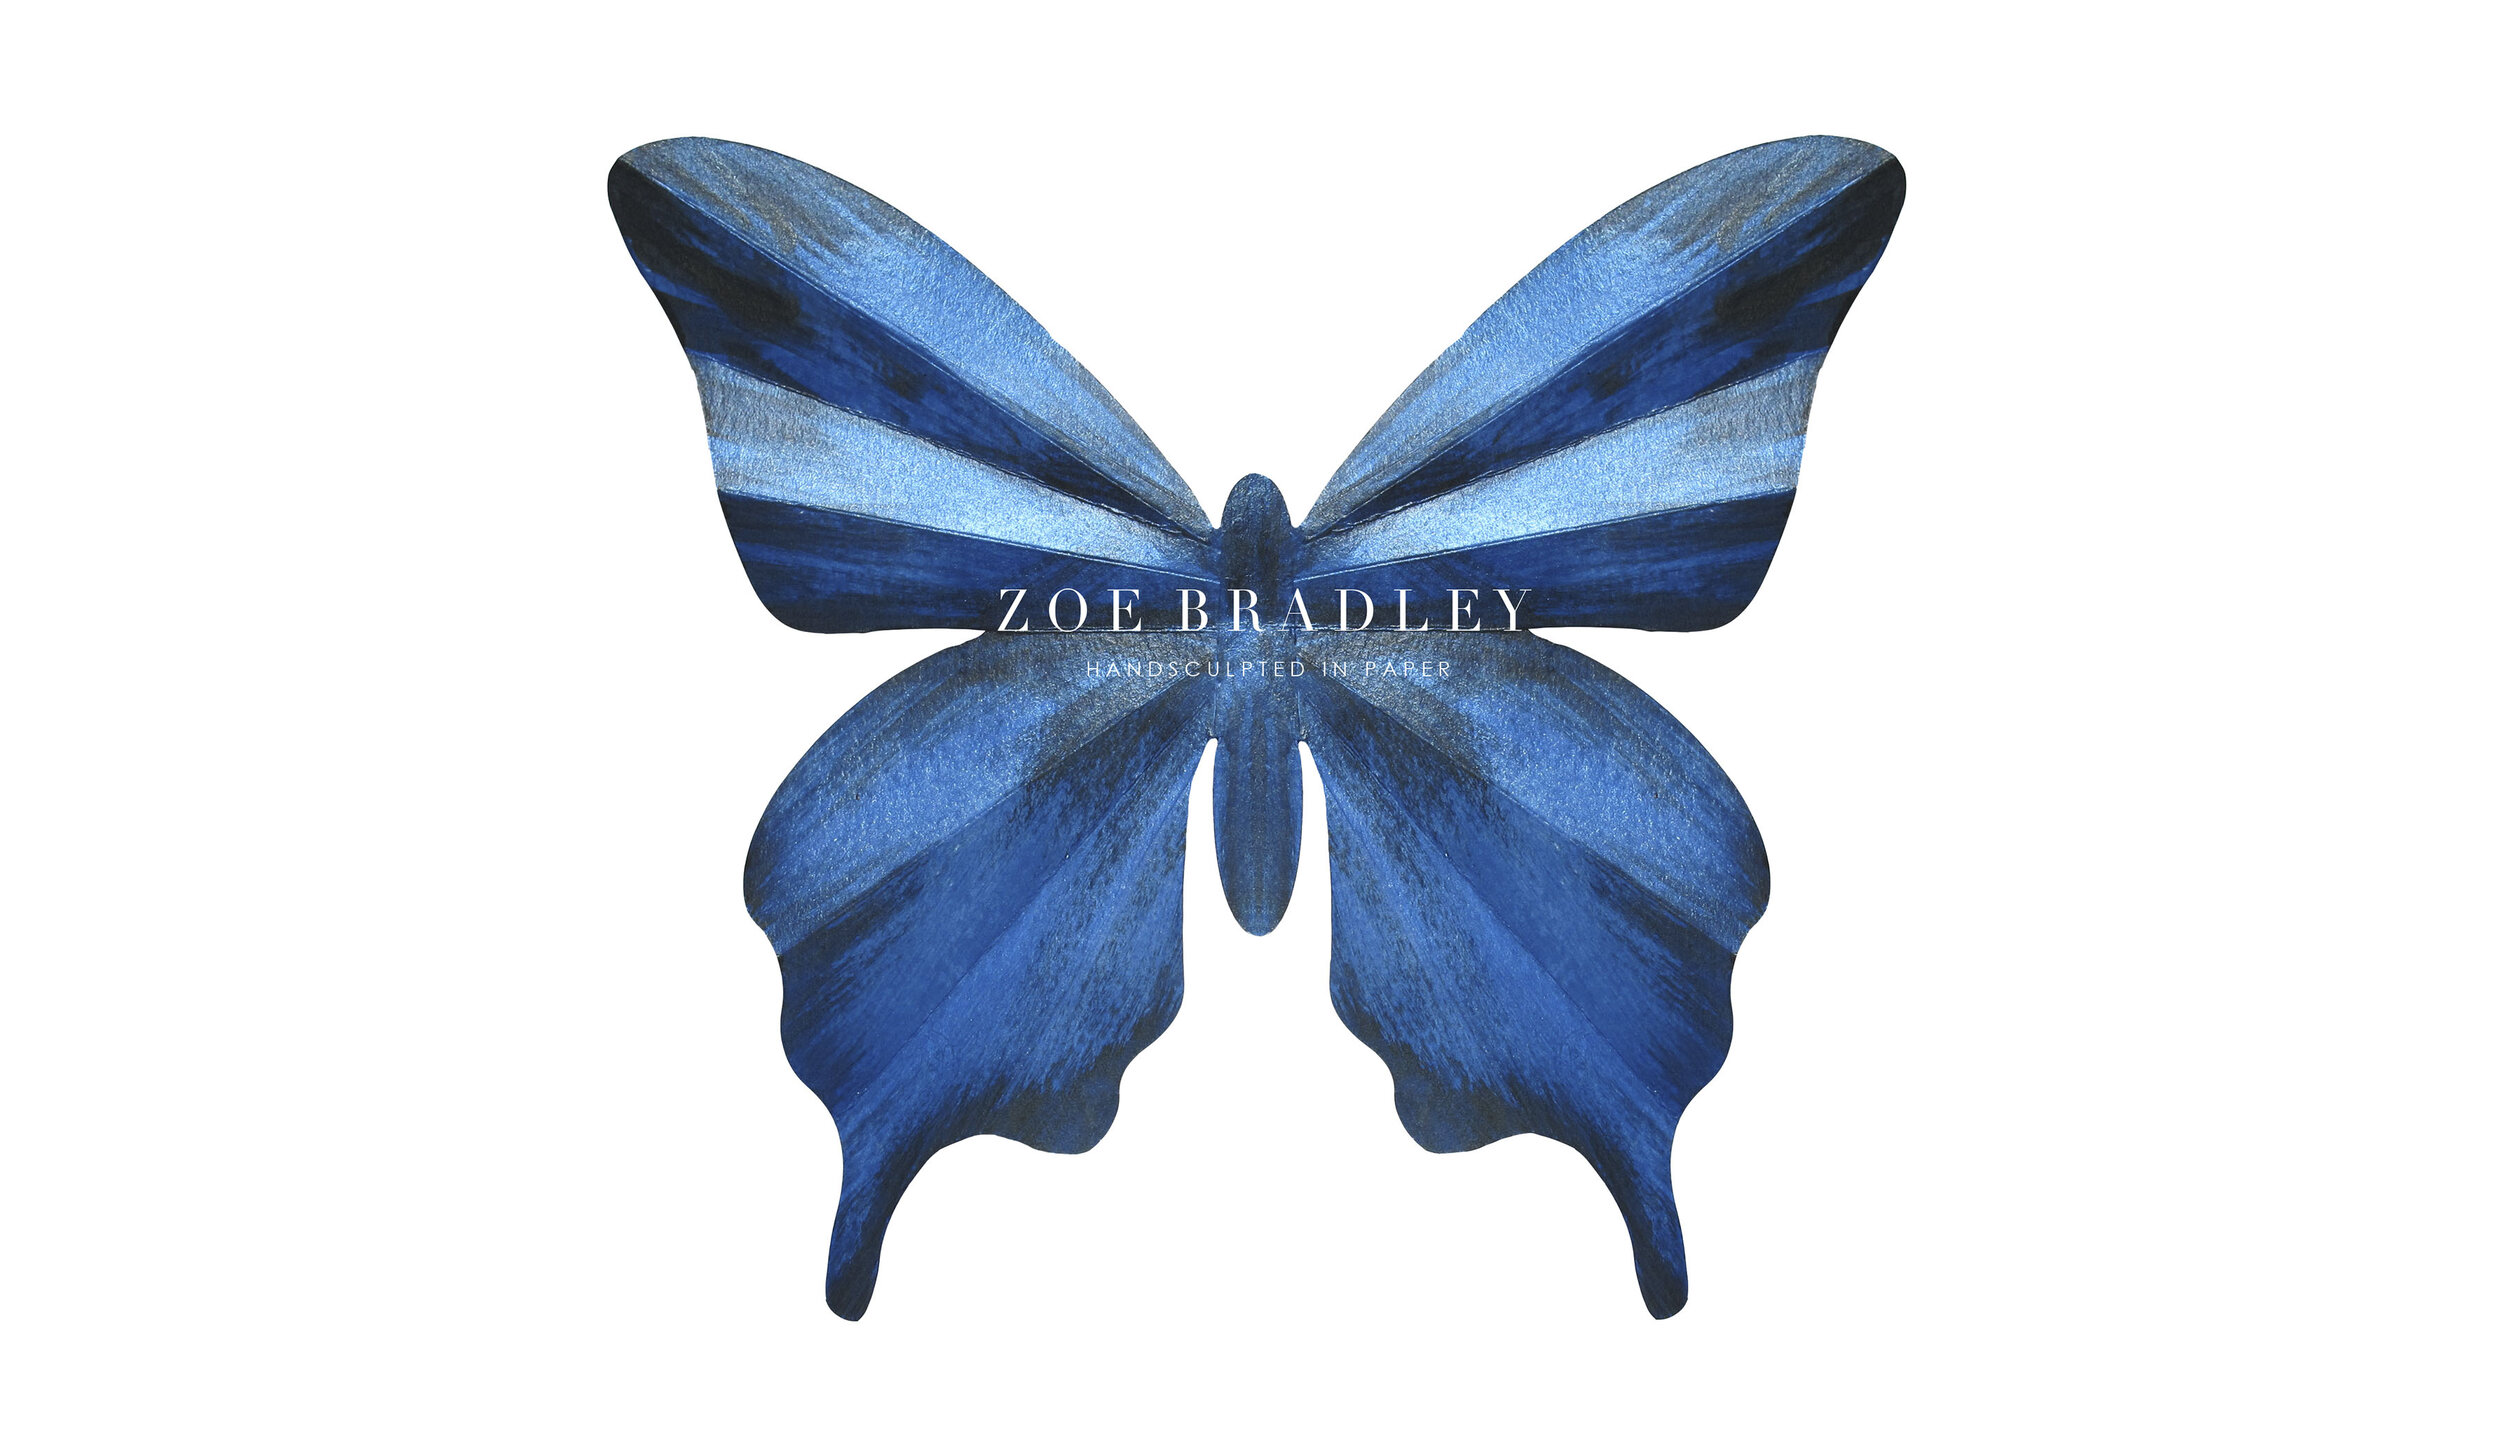 butterfly-harrods-harrodssummer-zoebradley-socailbutterflies-blue-paperbutterflies-paper-art-paperart-art-design-fashion.jpg